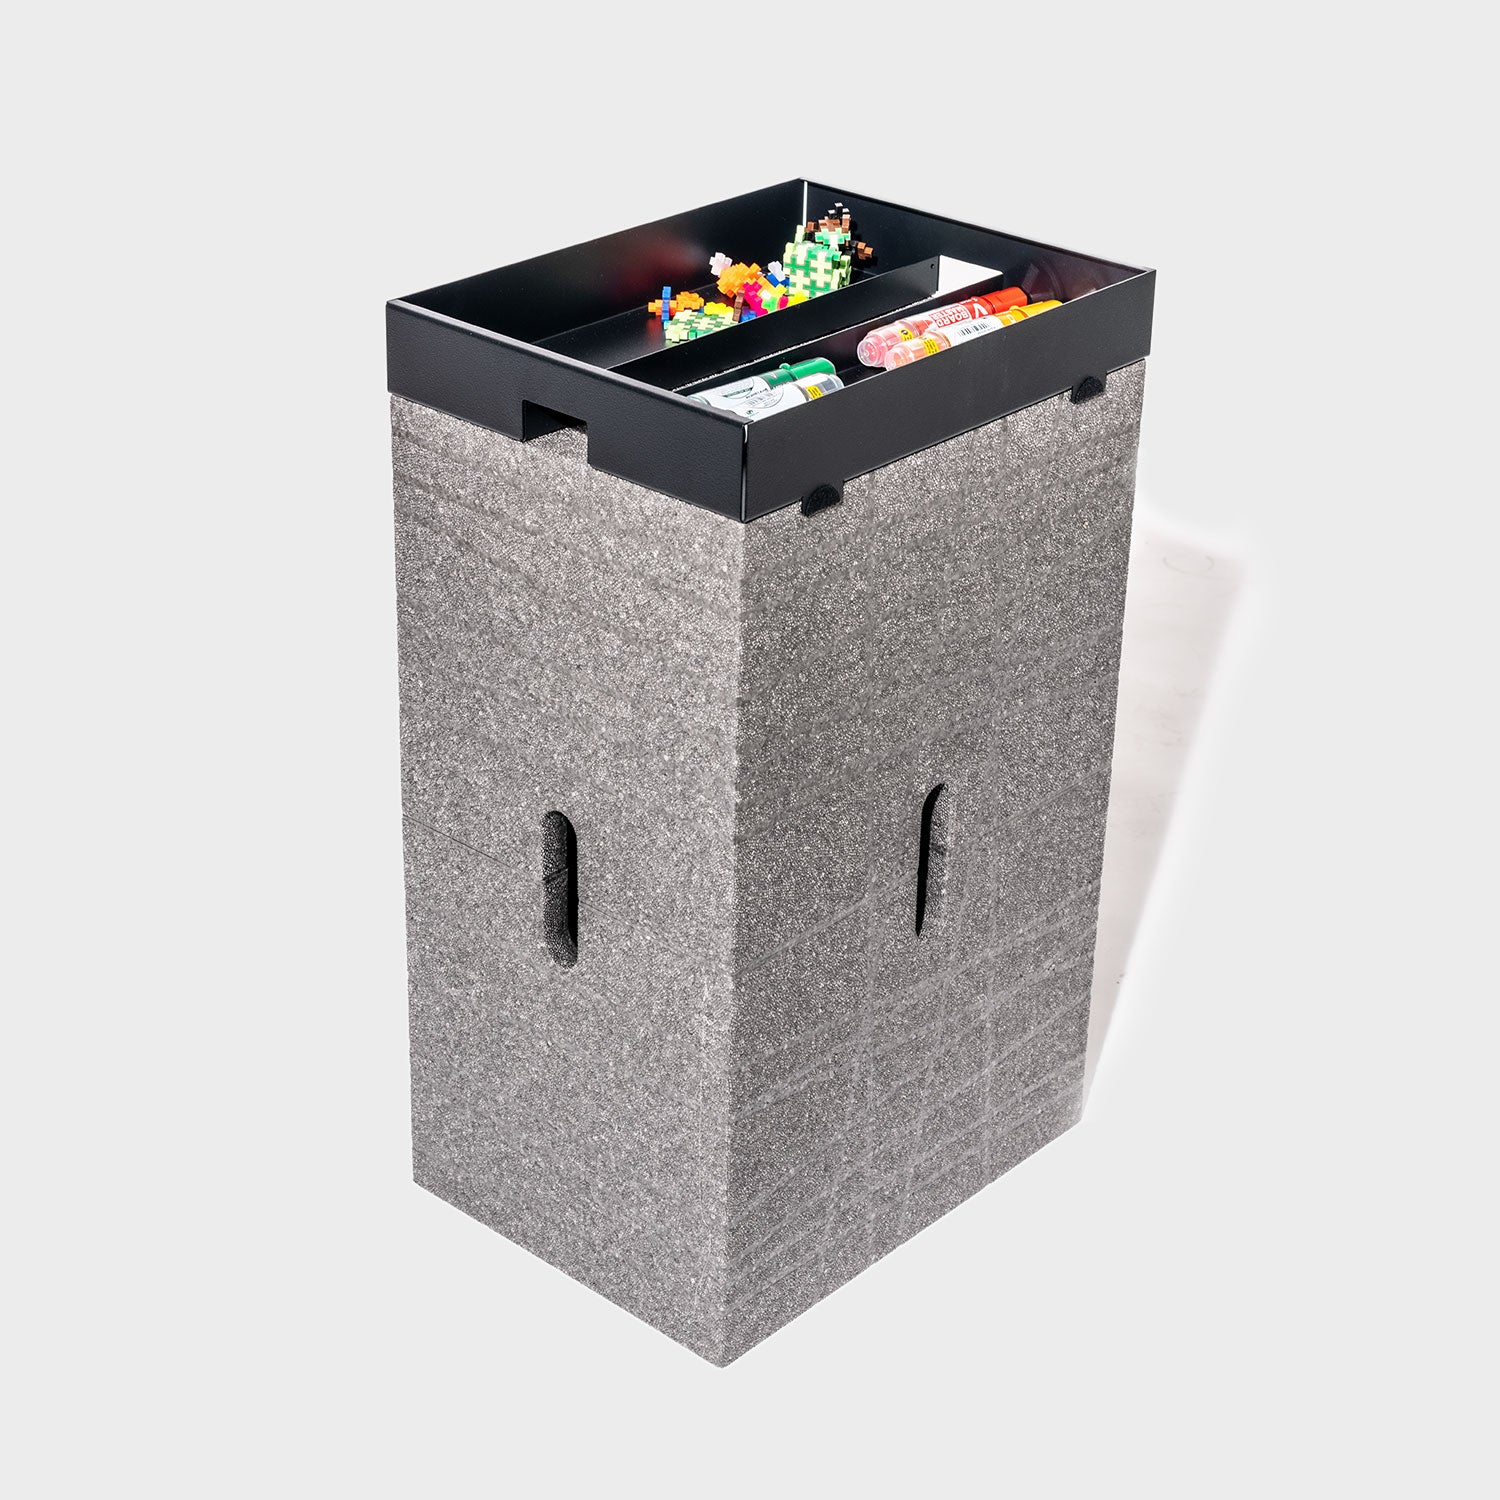 Utensil box - X-toolbox